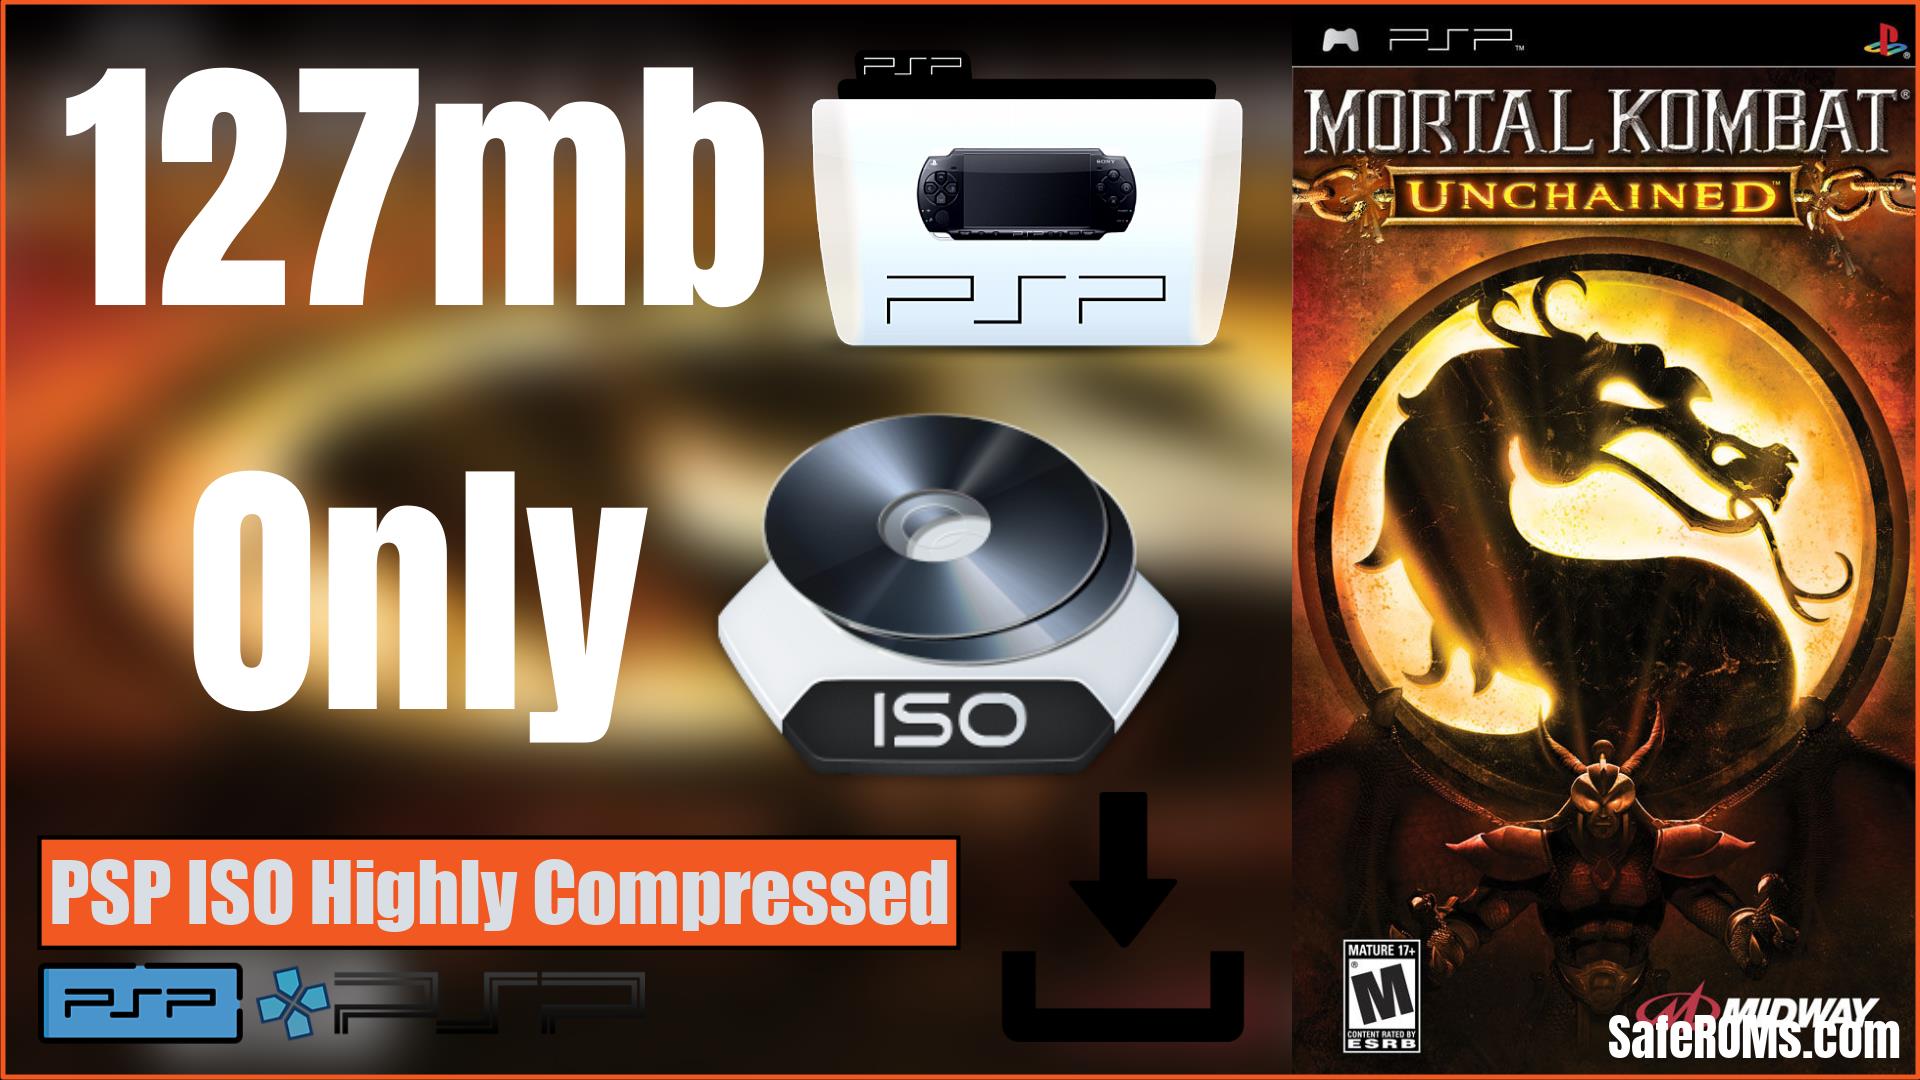 Mortal Kombat Deception PSP ISO Highly Compressed Download